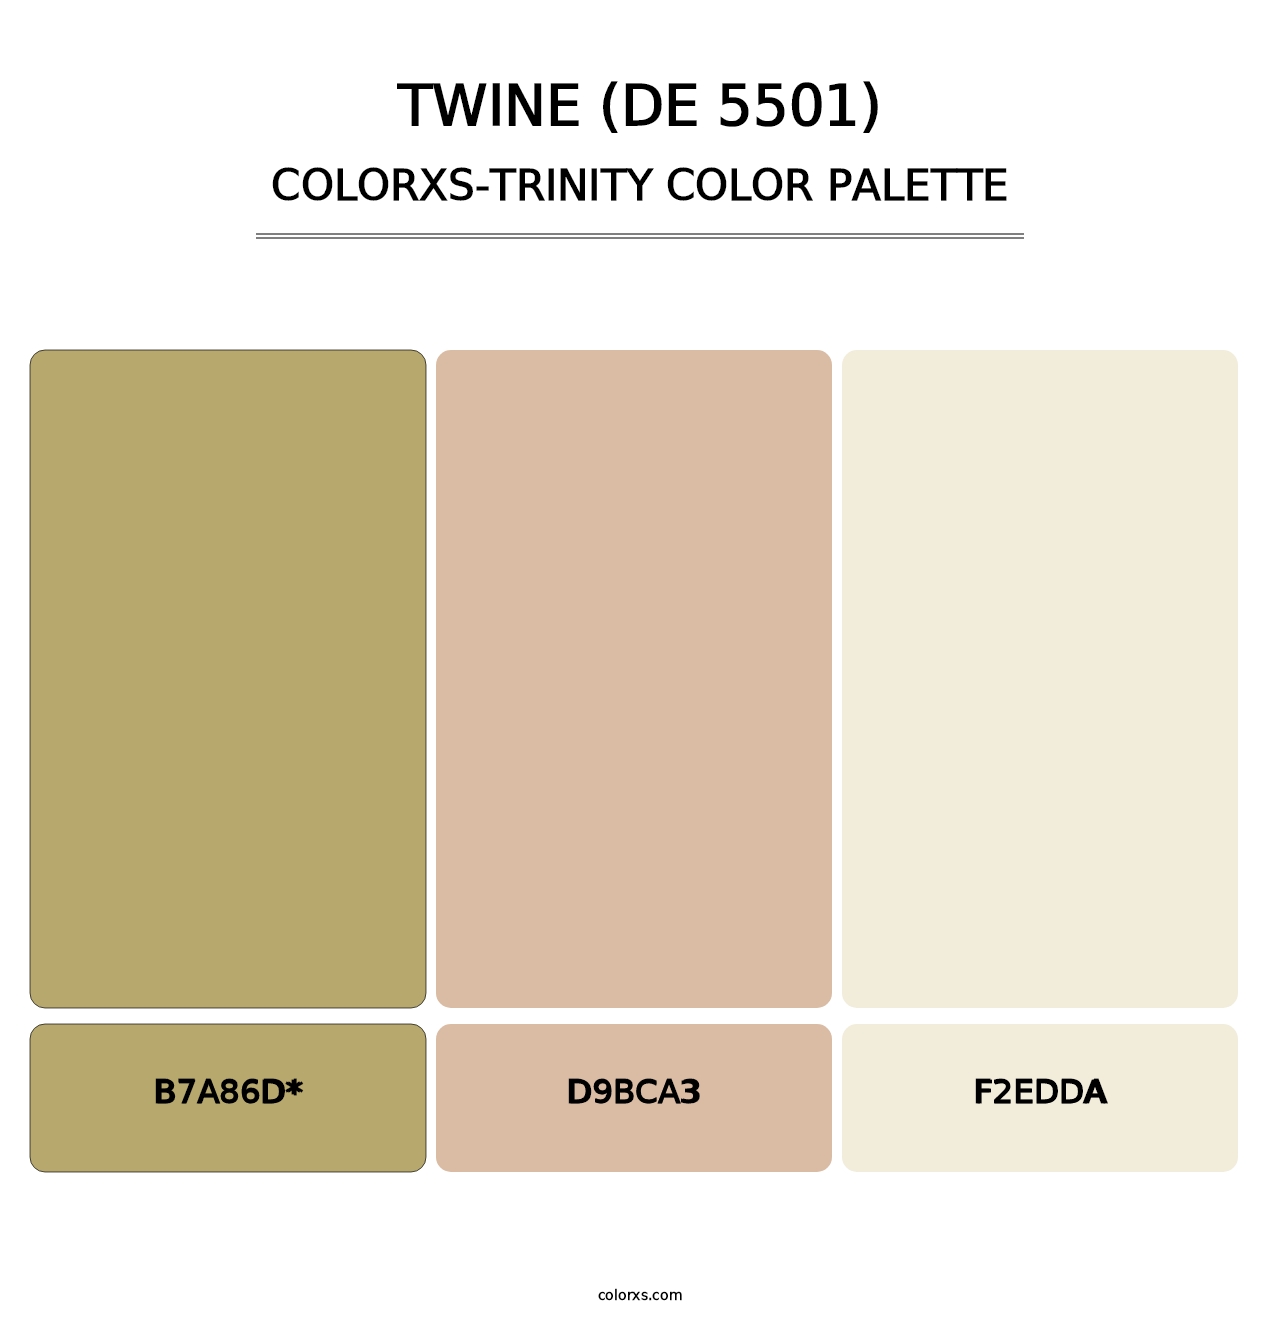 Twine (DE 5501) - Colorxs Trinity Palette